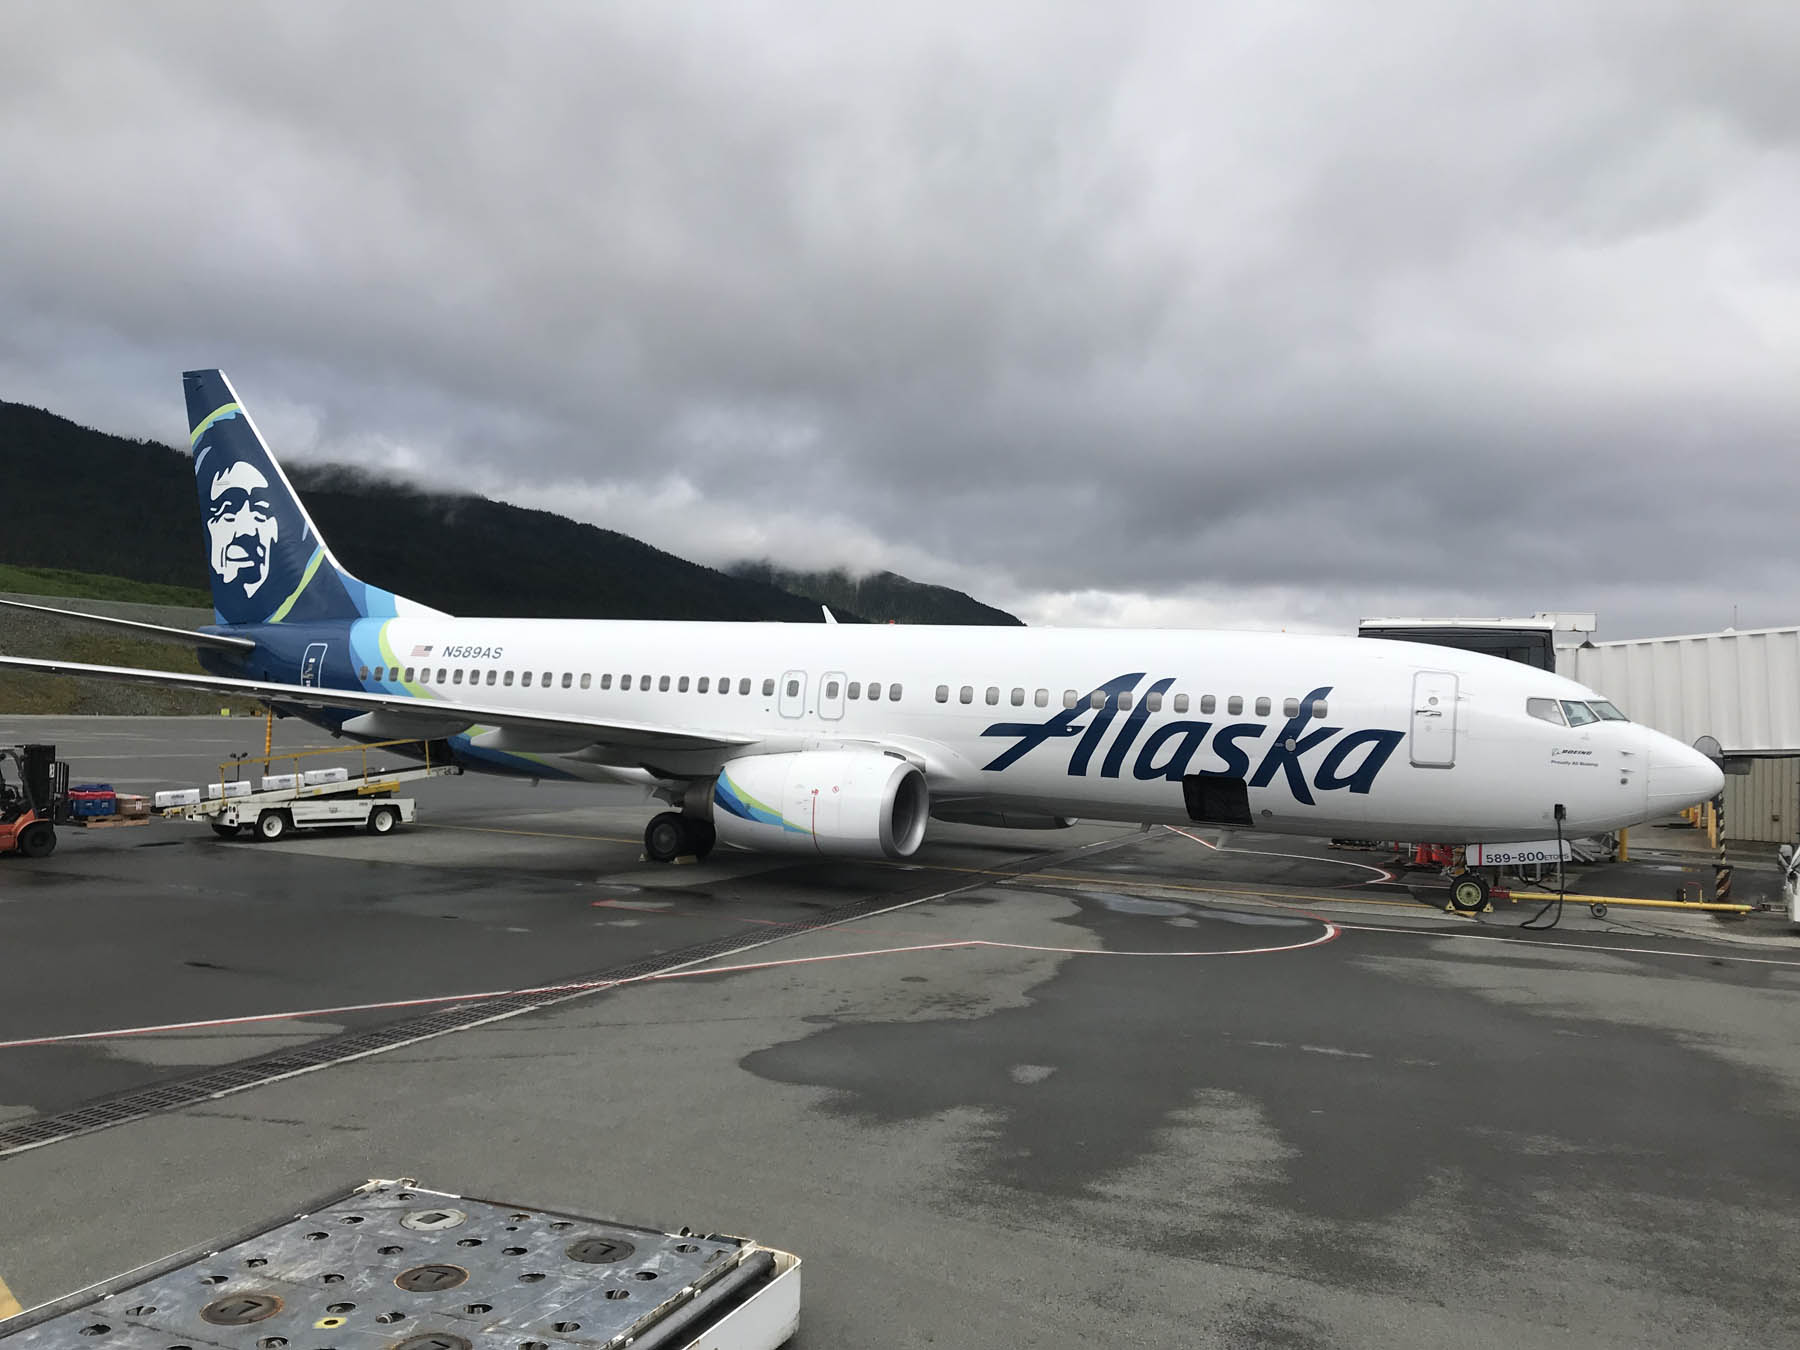 Alaska Air passenger plane at an airport gate.